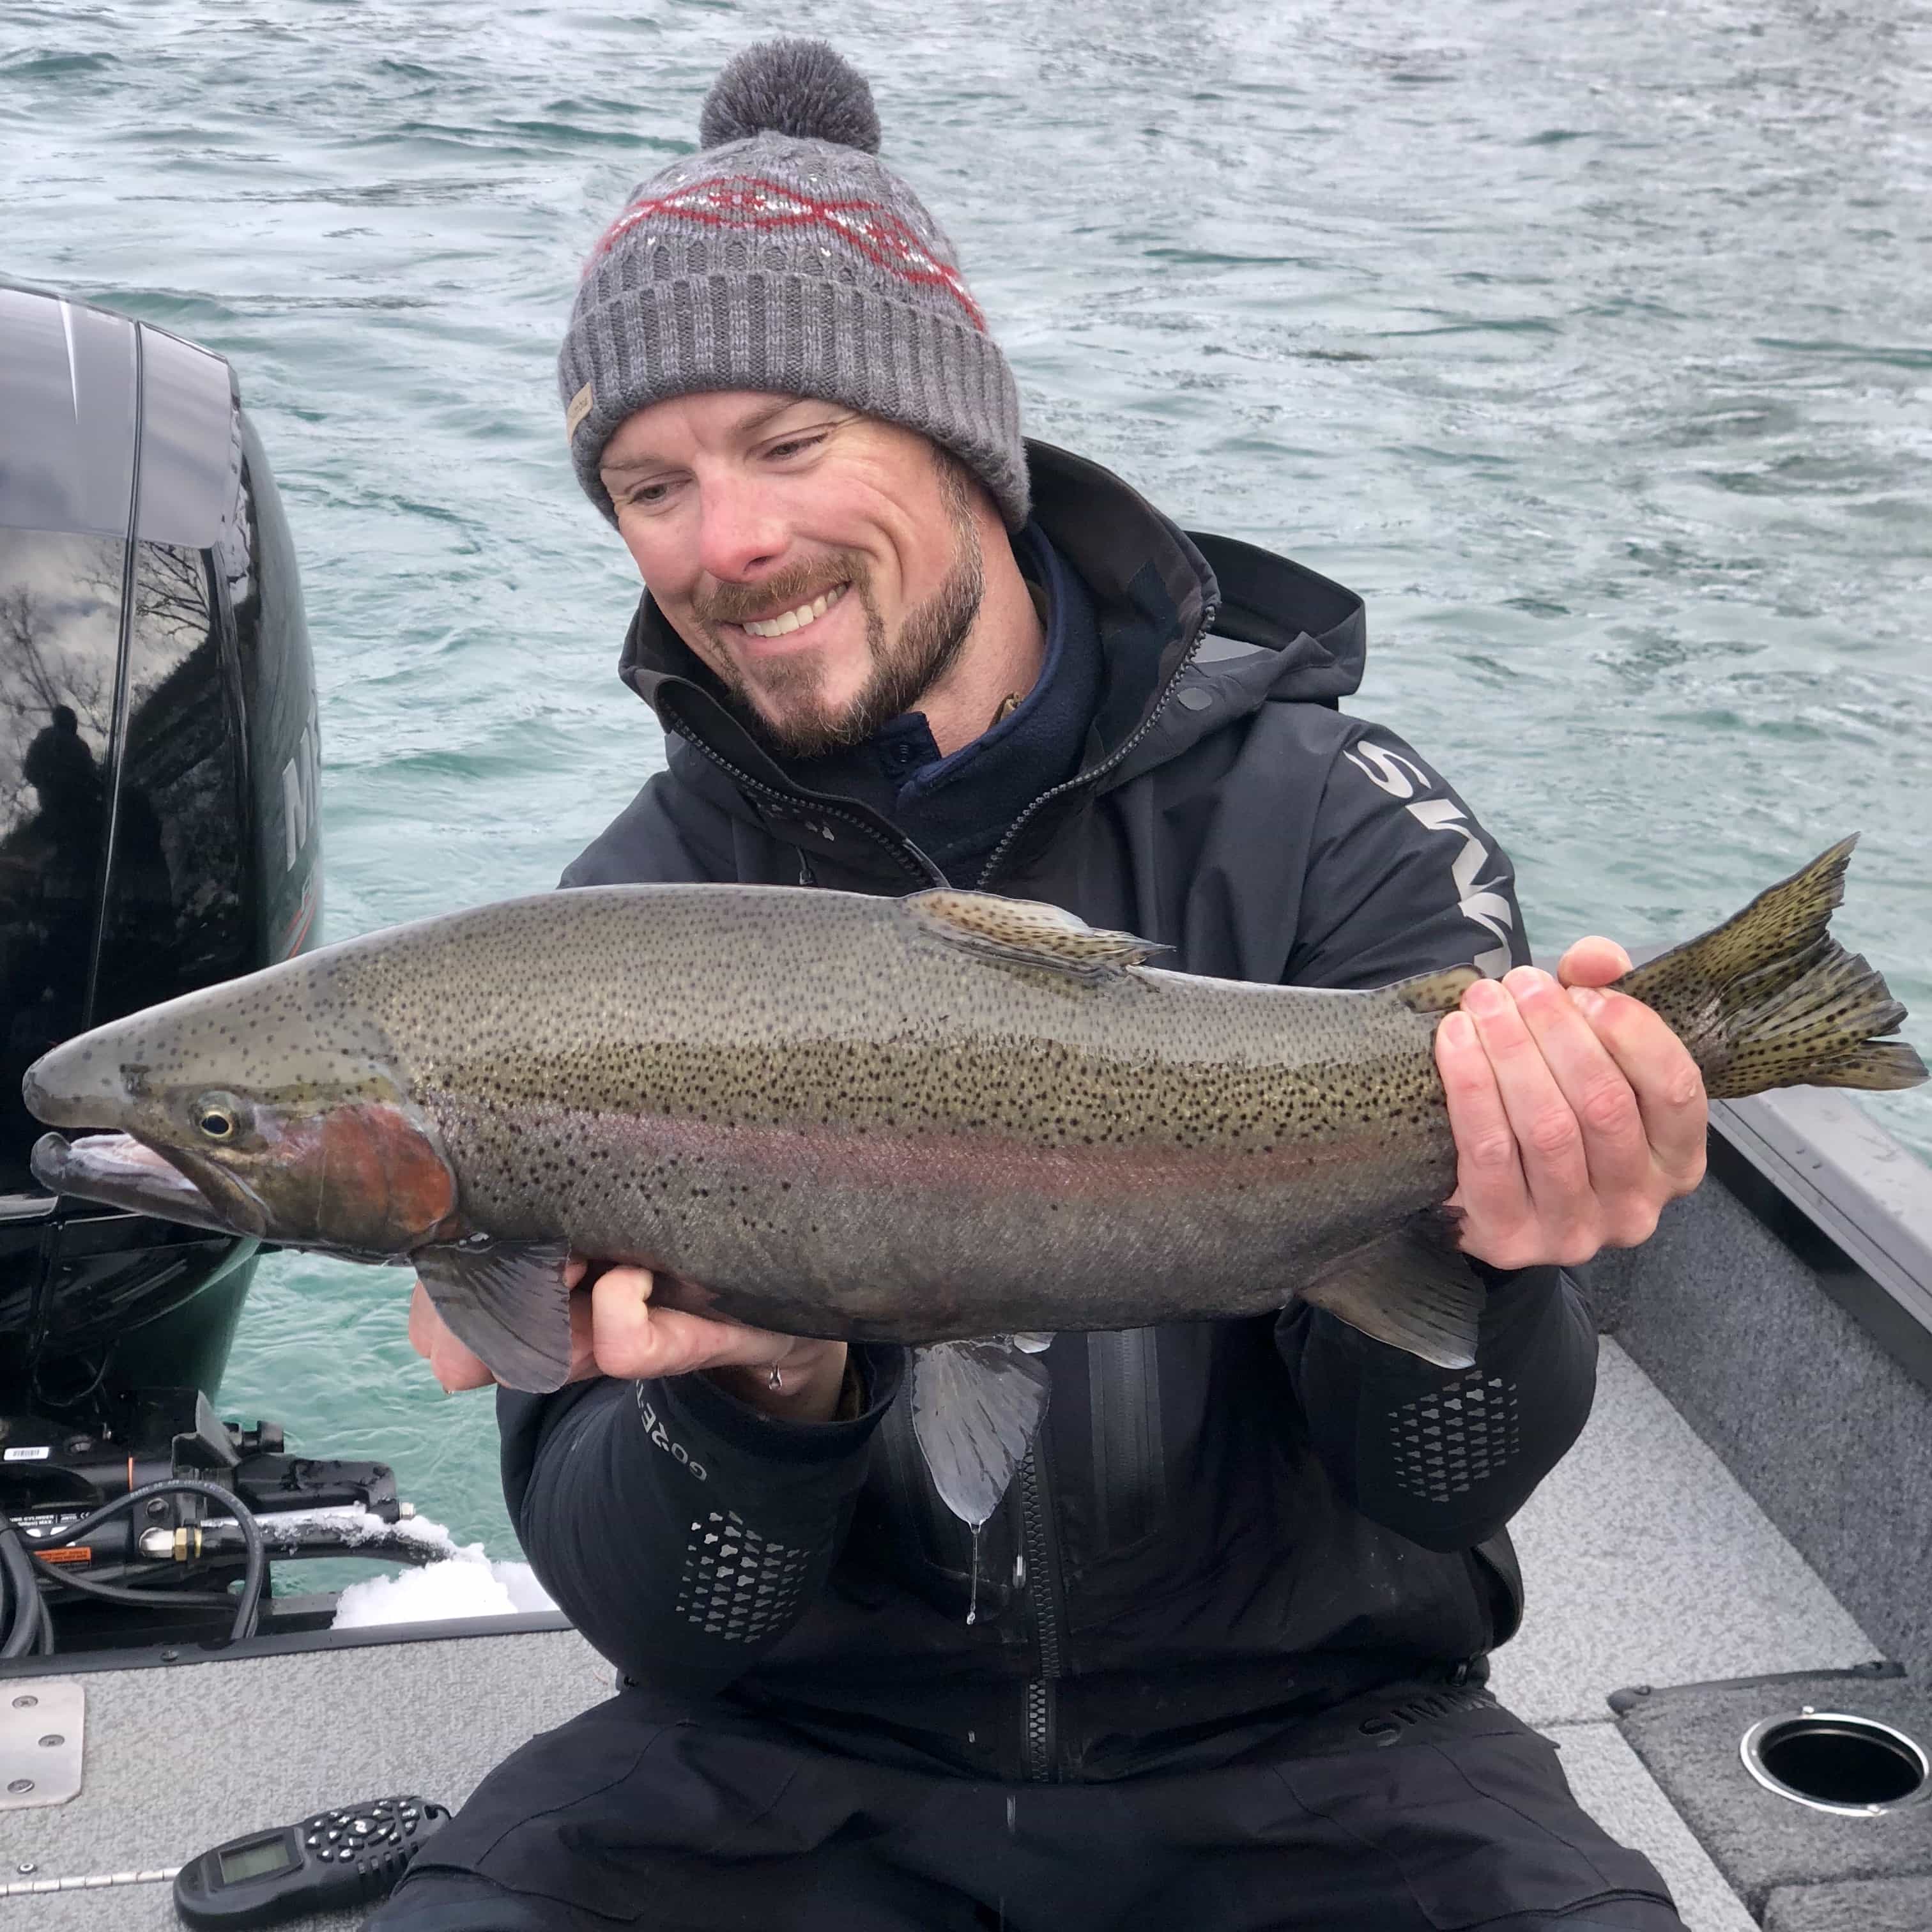 20180303 134518371 iOS - Winter Charter Fishing in Buffalo Niagara